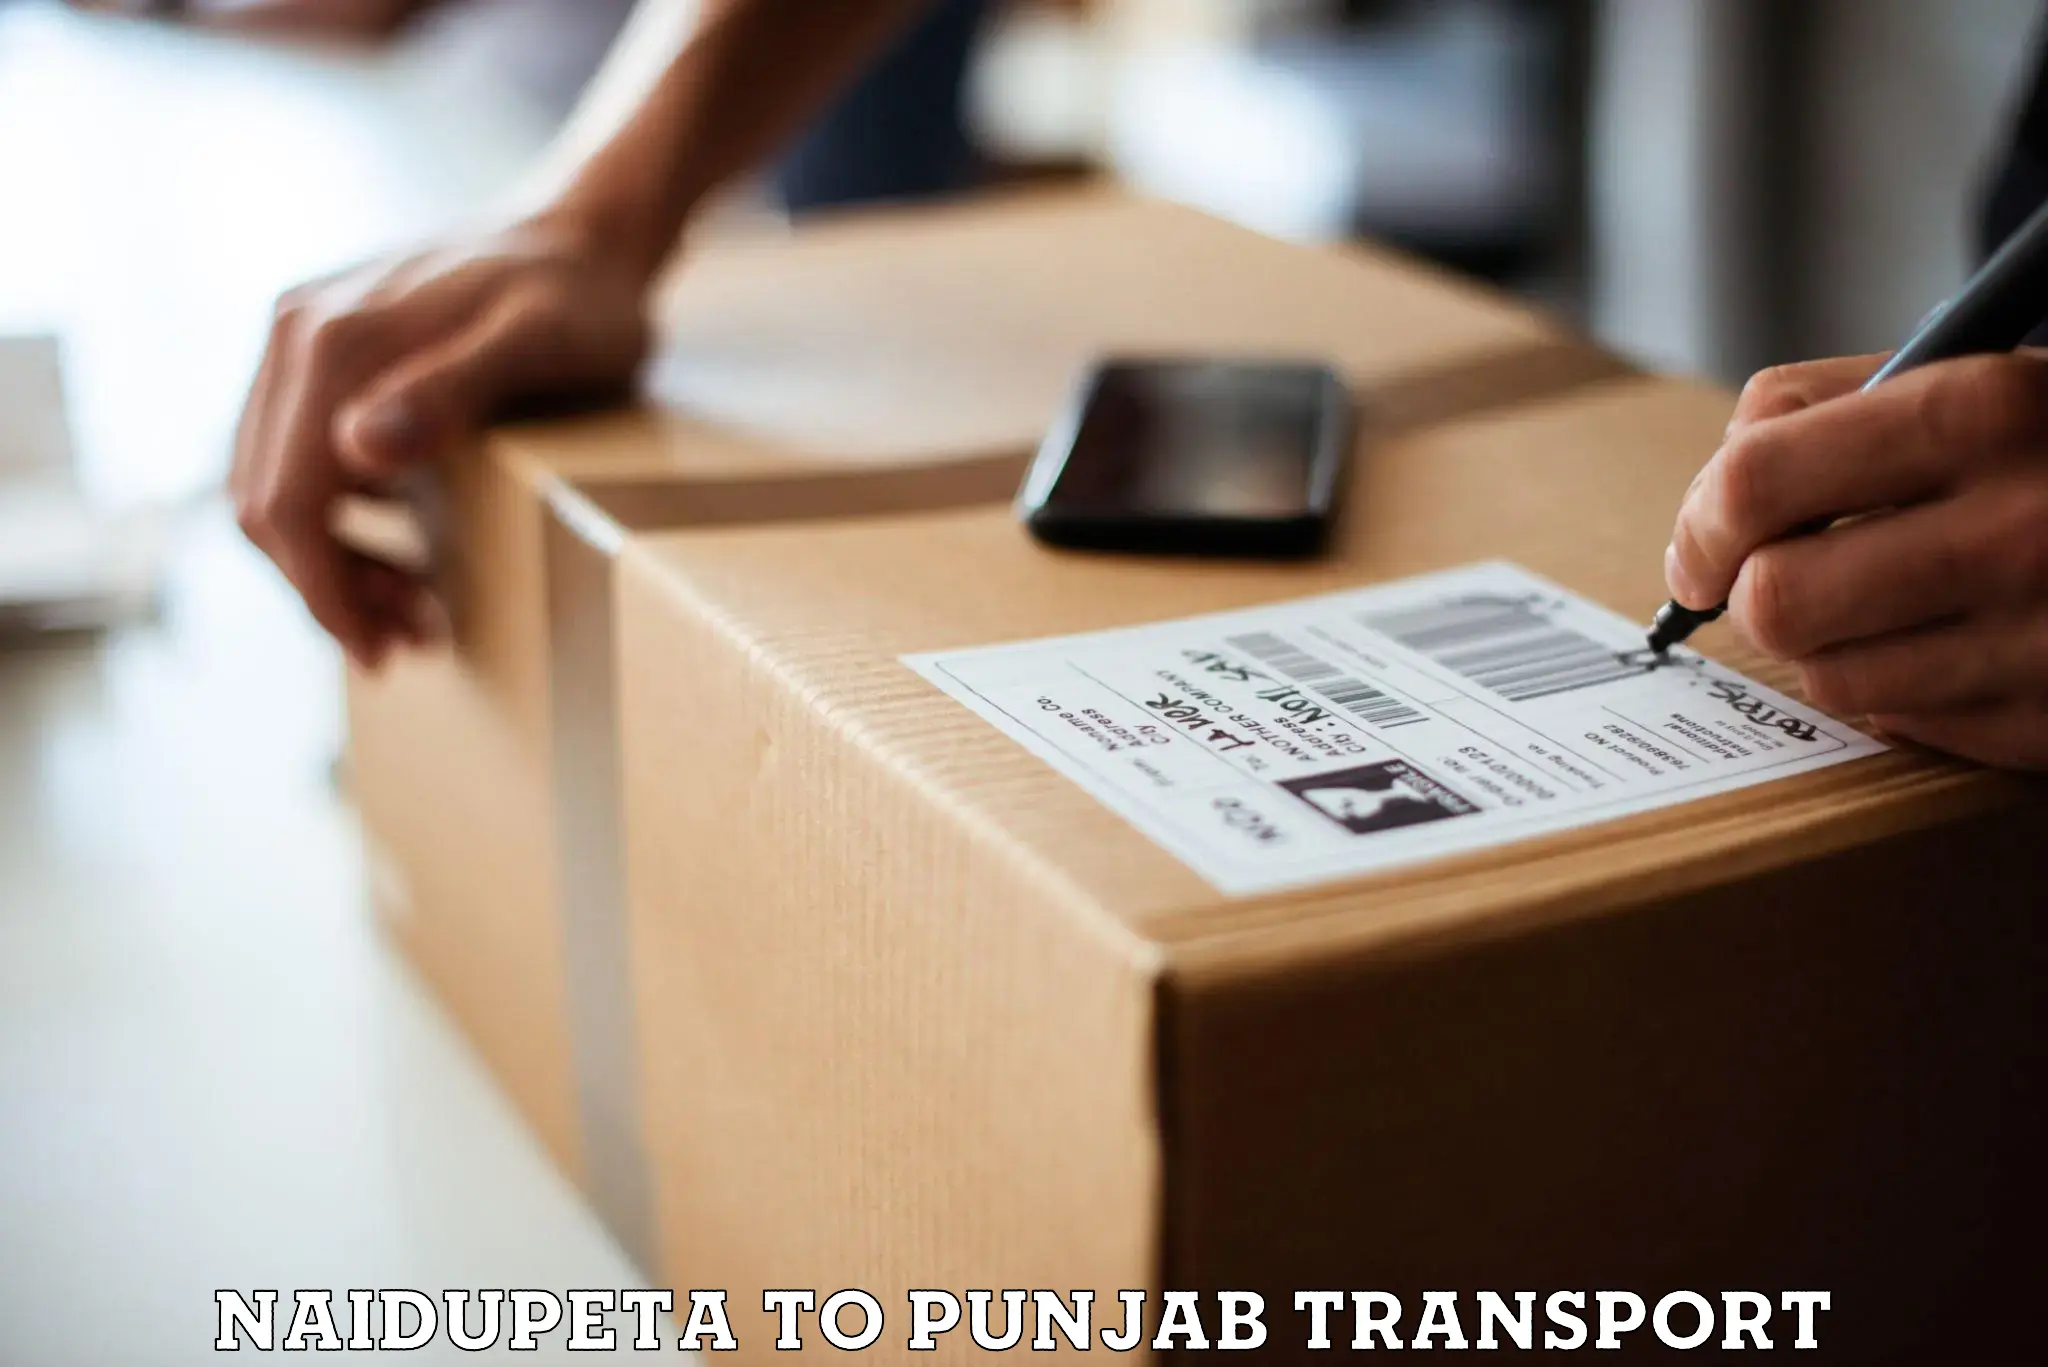 Vehicle transport services Naidupeta to Punjab